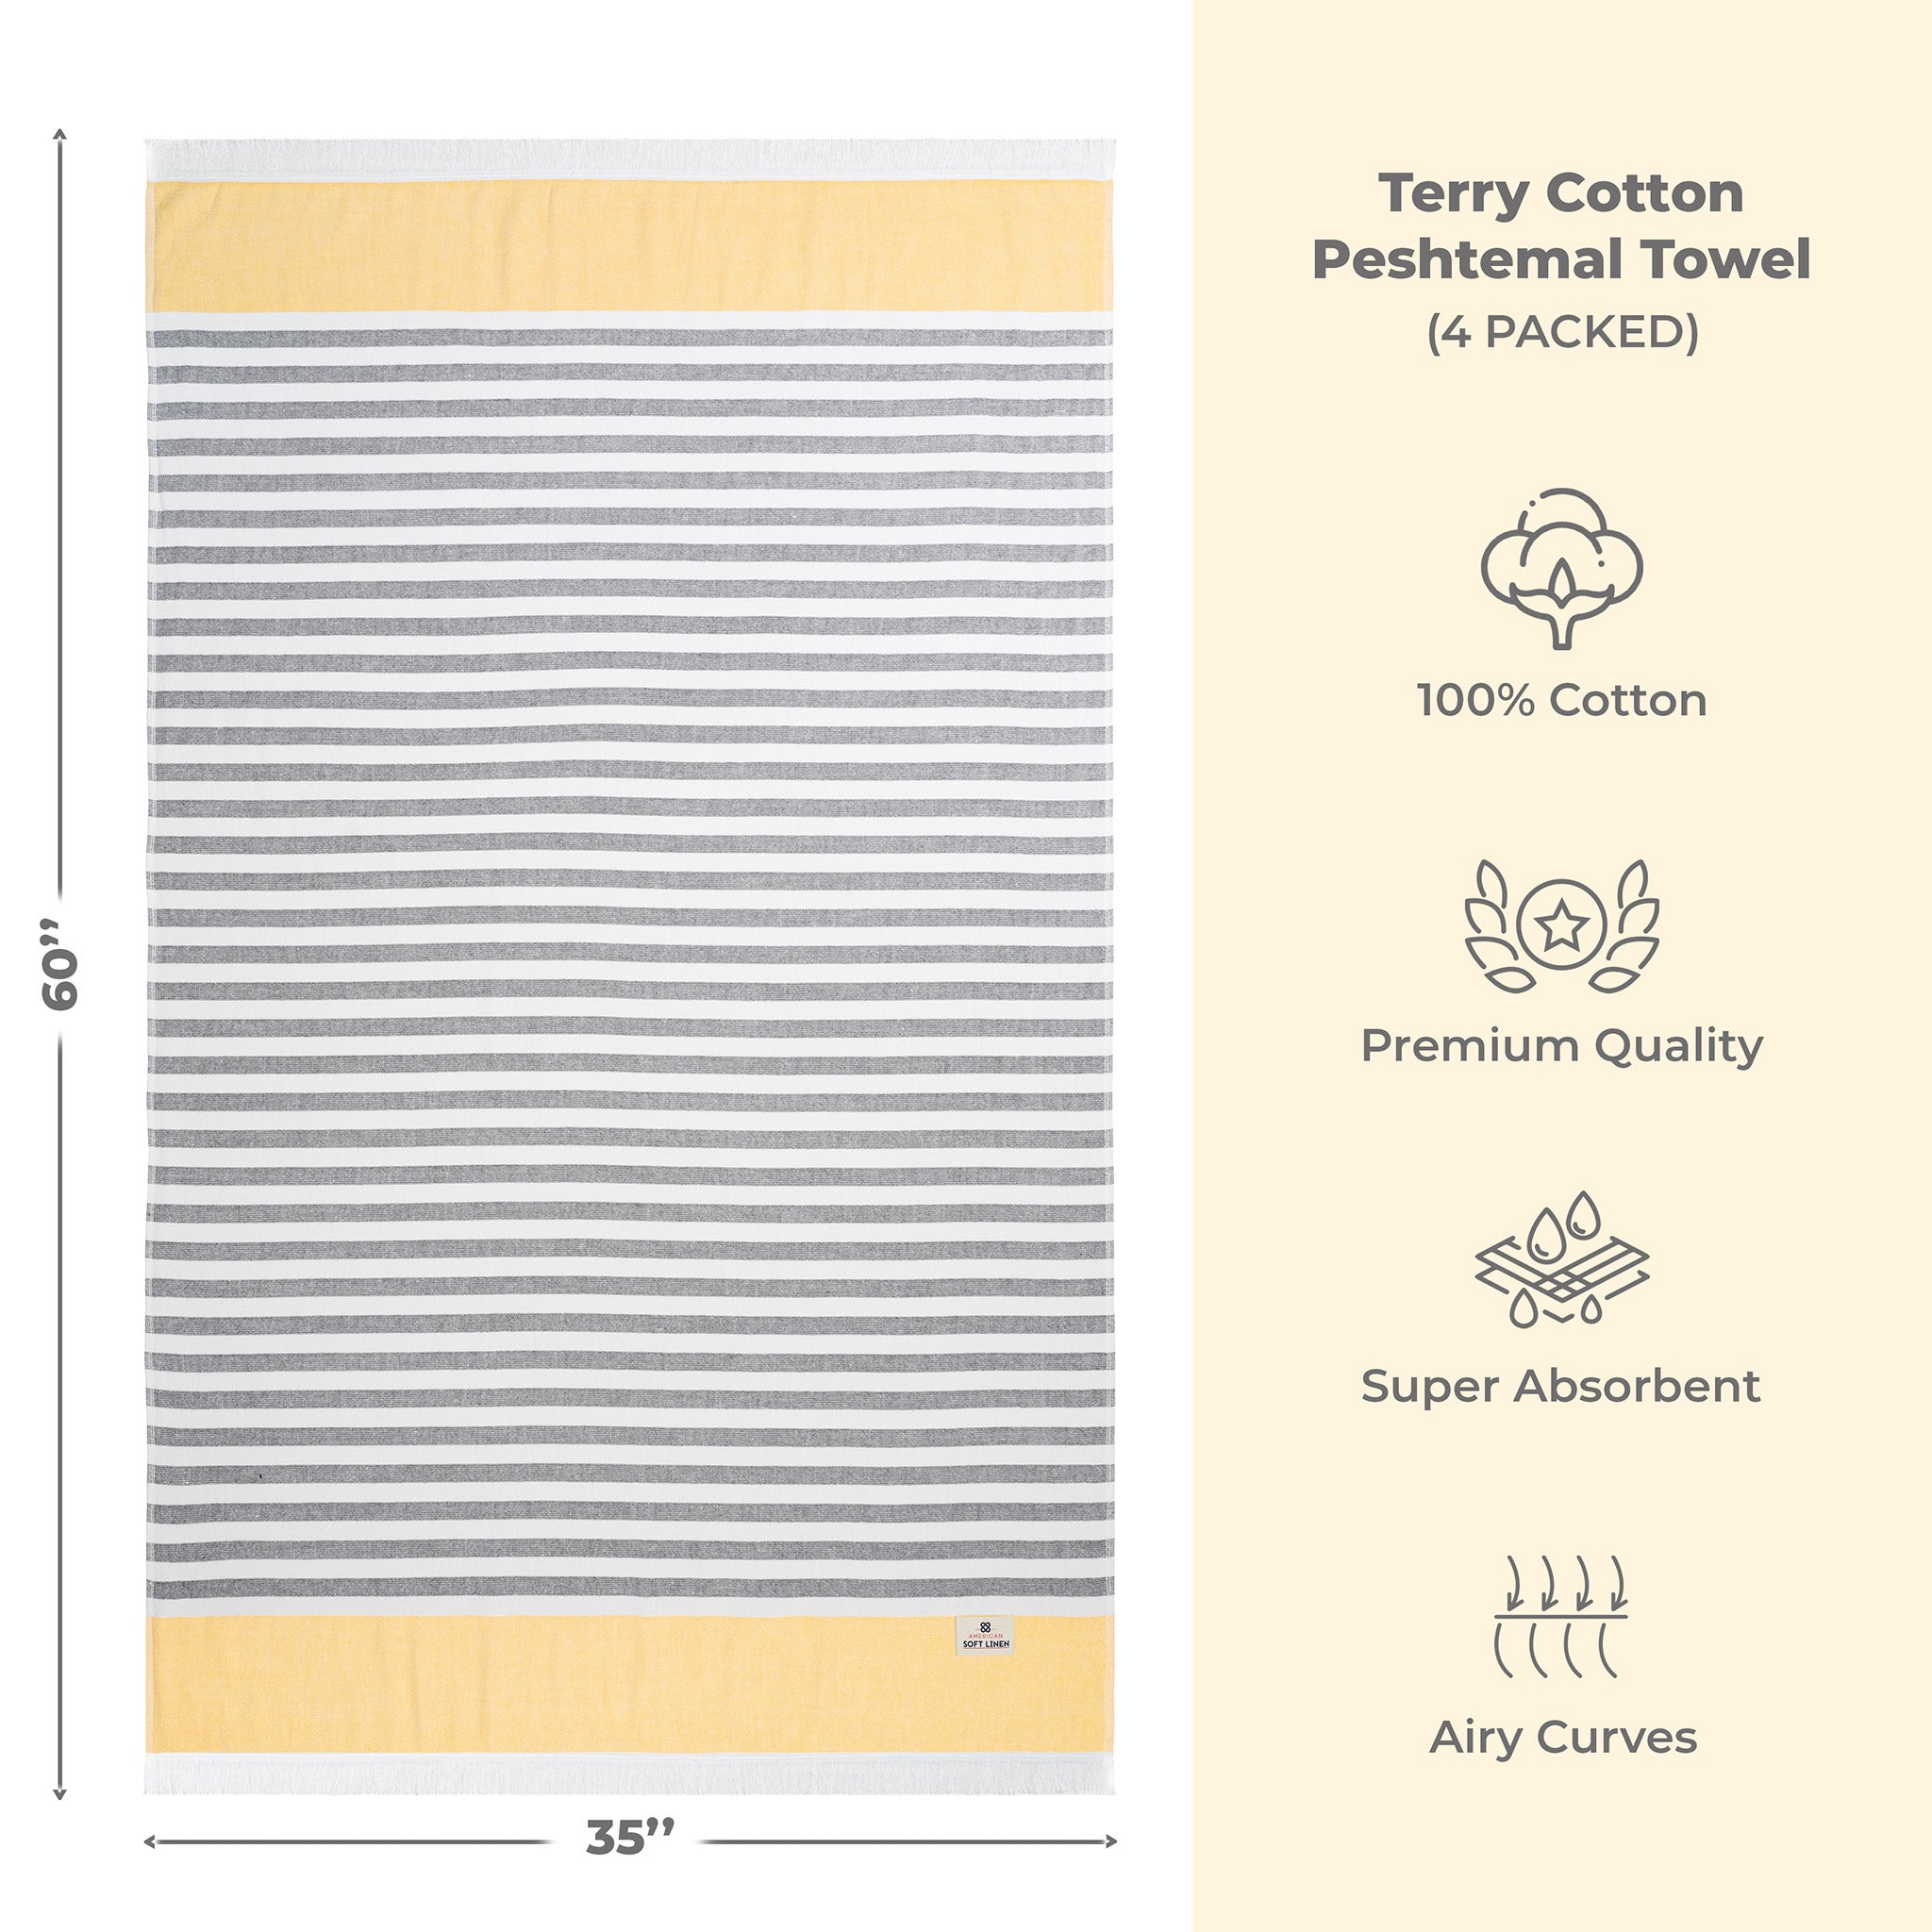 4 Packed 100% Cotton Terry Peshtemal & Beach Towel Yellow-03